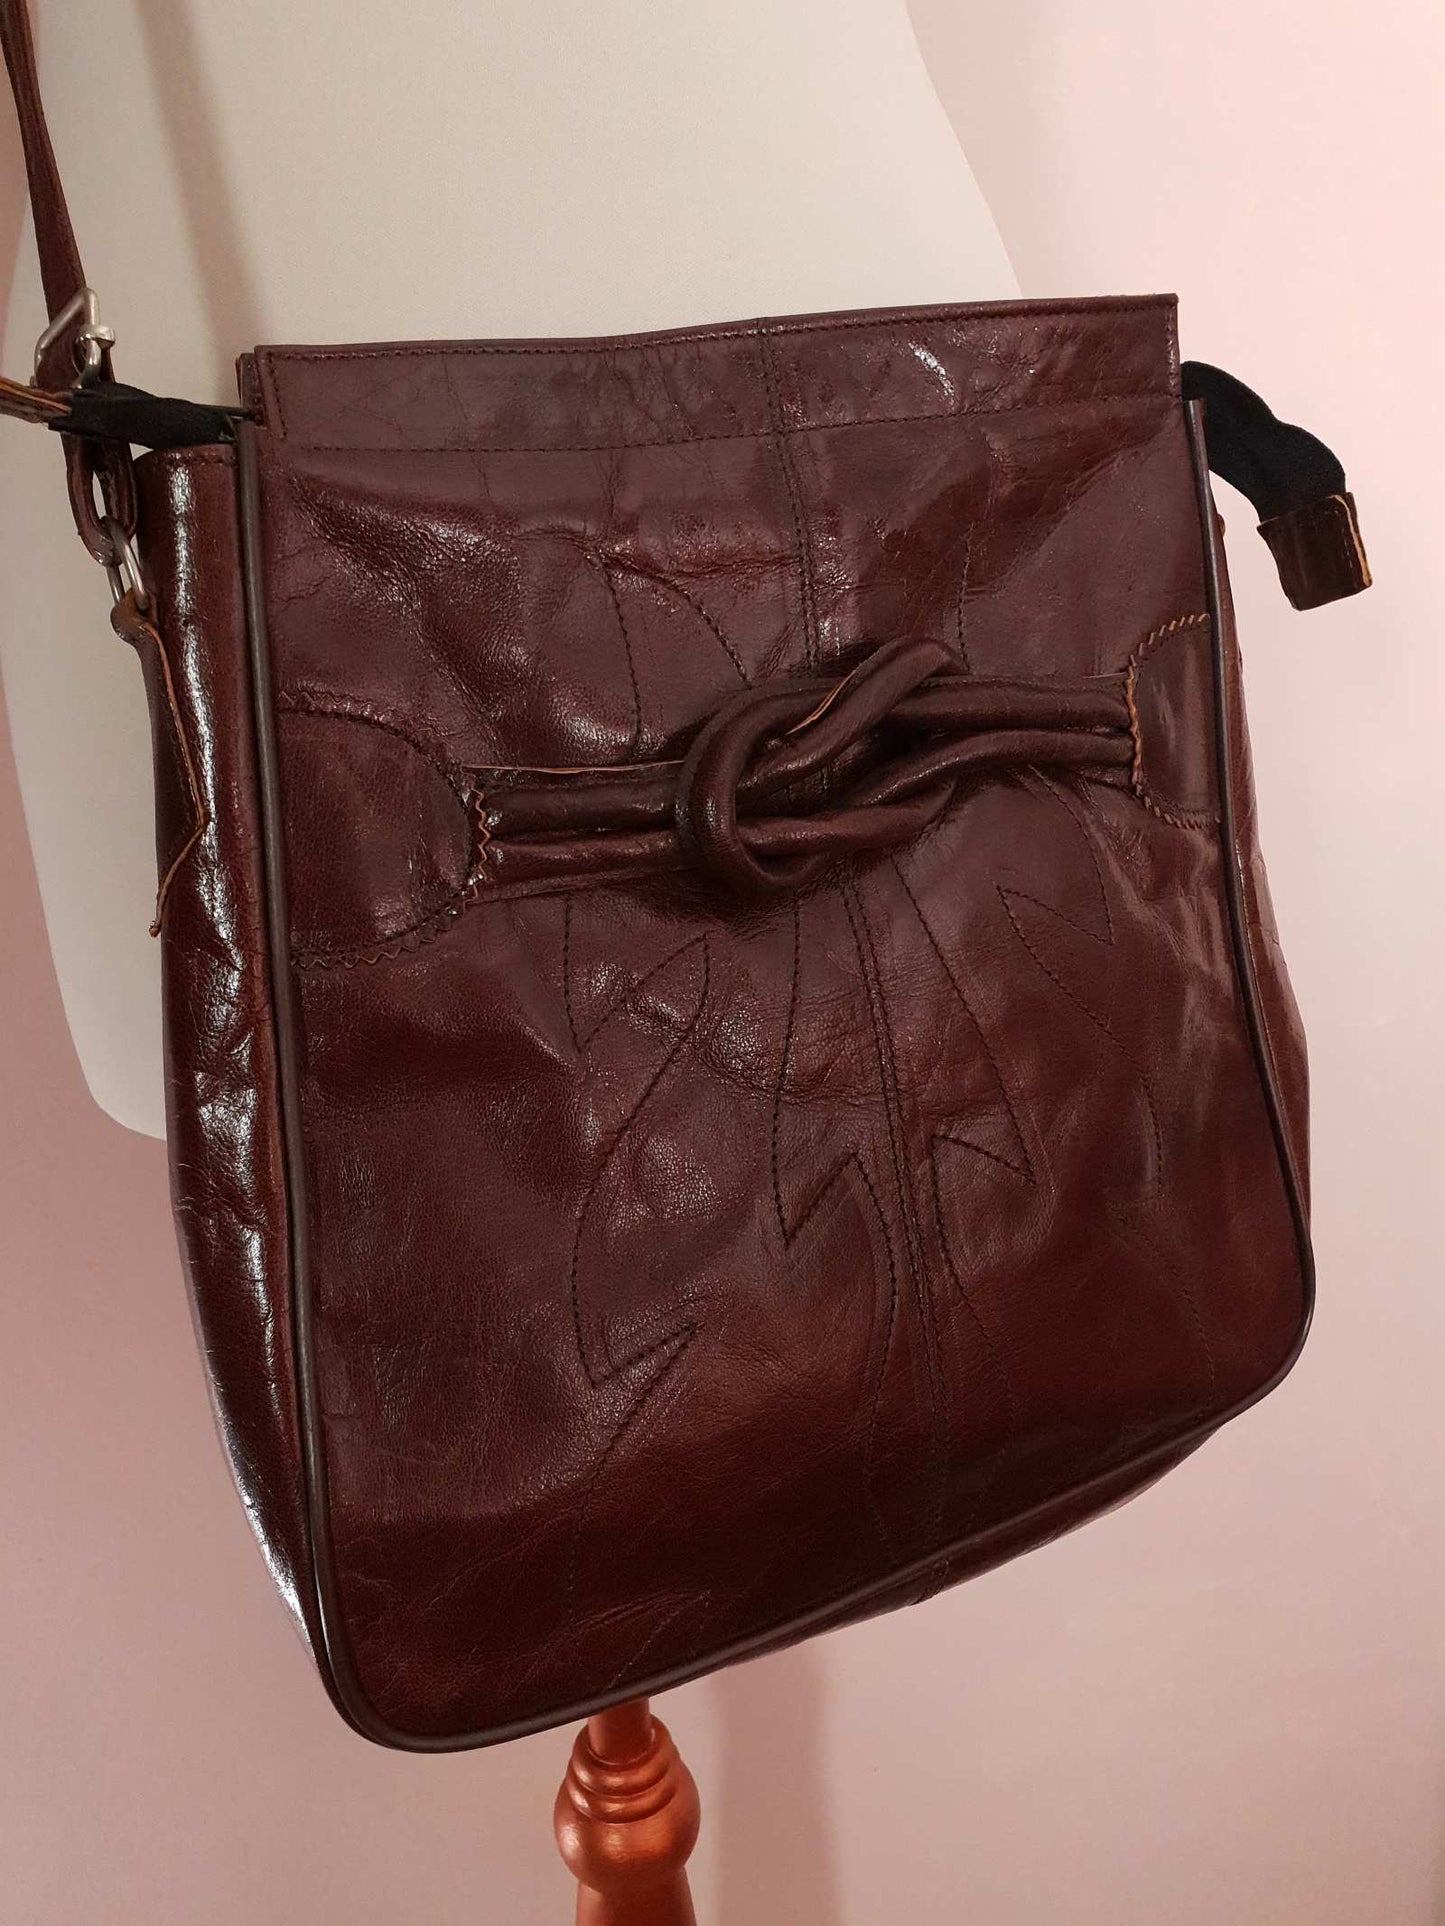 Vintage 1970s Brown Leather Shoulder Bag Adjustable Crossbody Retro Boho Handbag